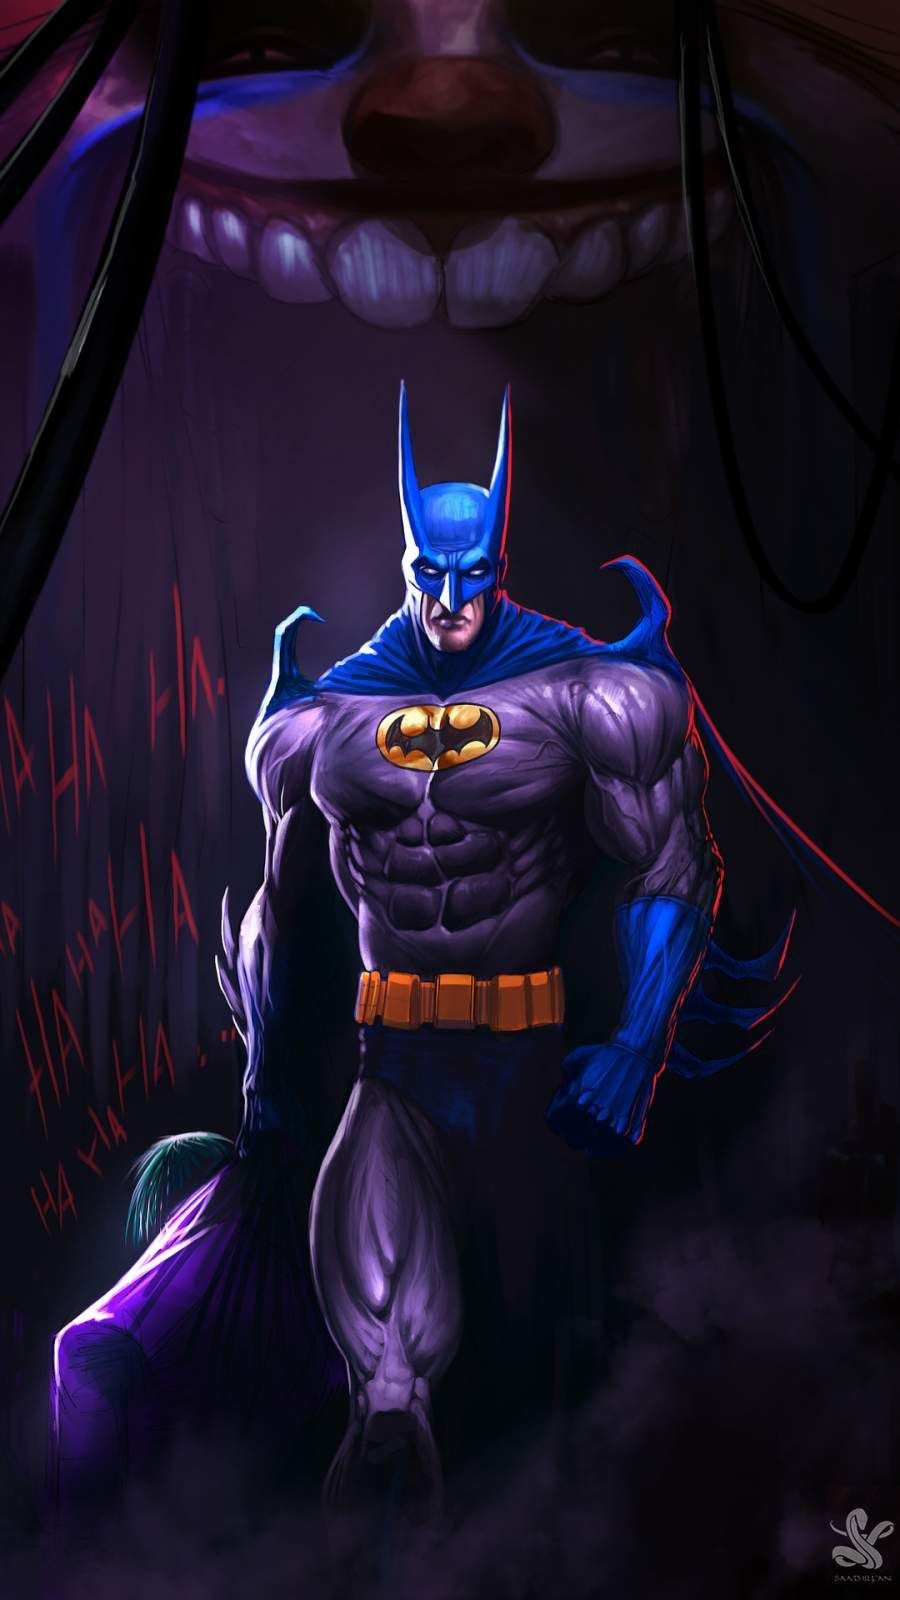 The Evil Batman iPhone Wallpaper. Evil batman, Batman wallpaper, Batman